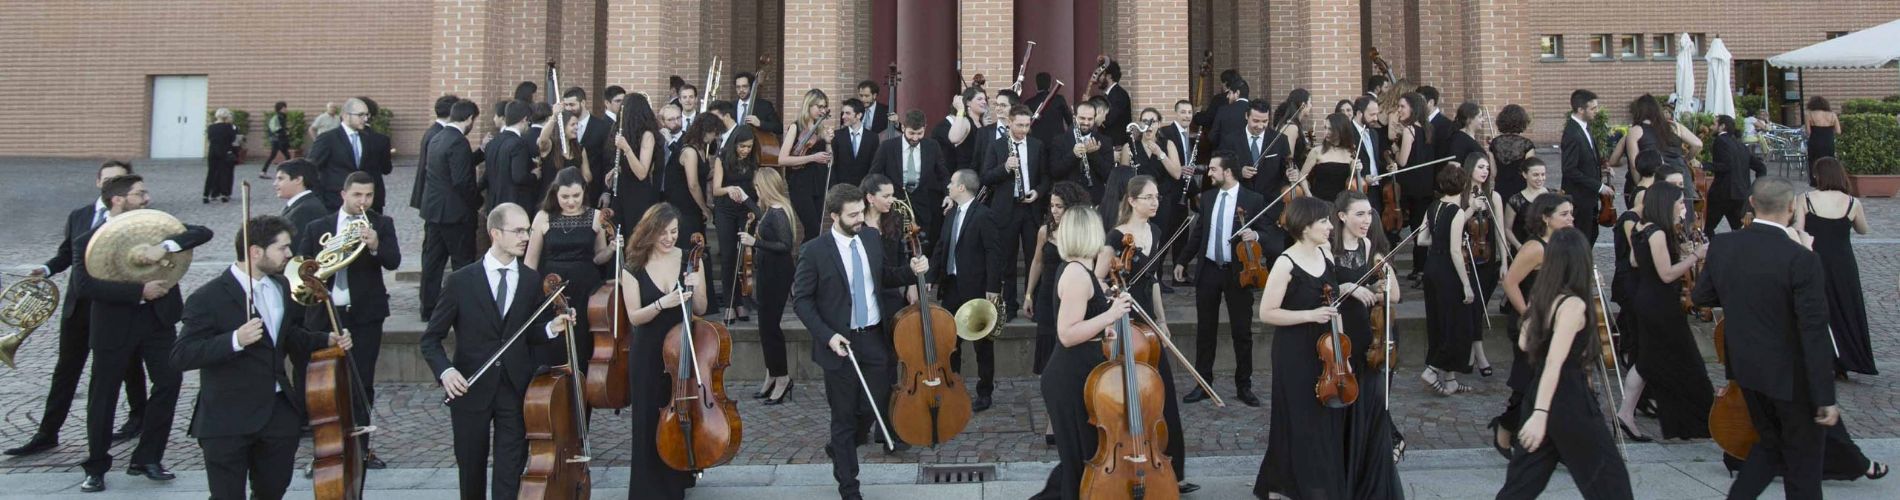 Fondazione Orchestra Giovanile “Luigi Cherubini”